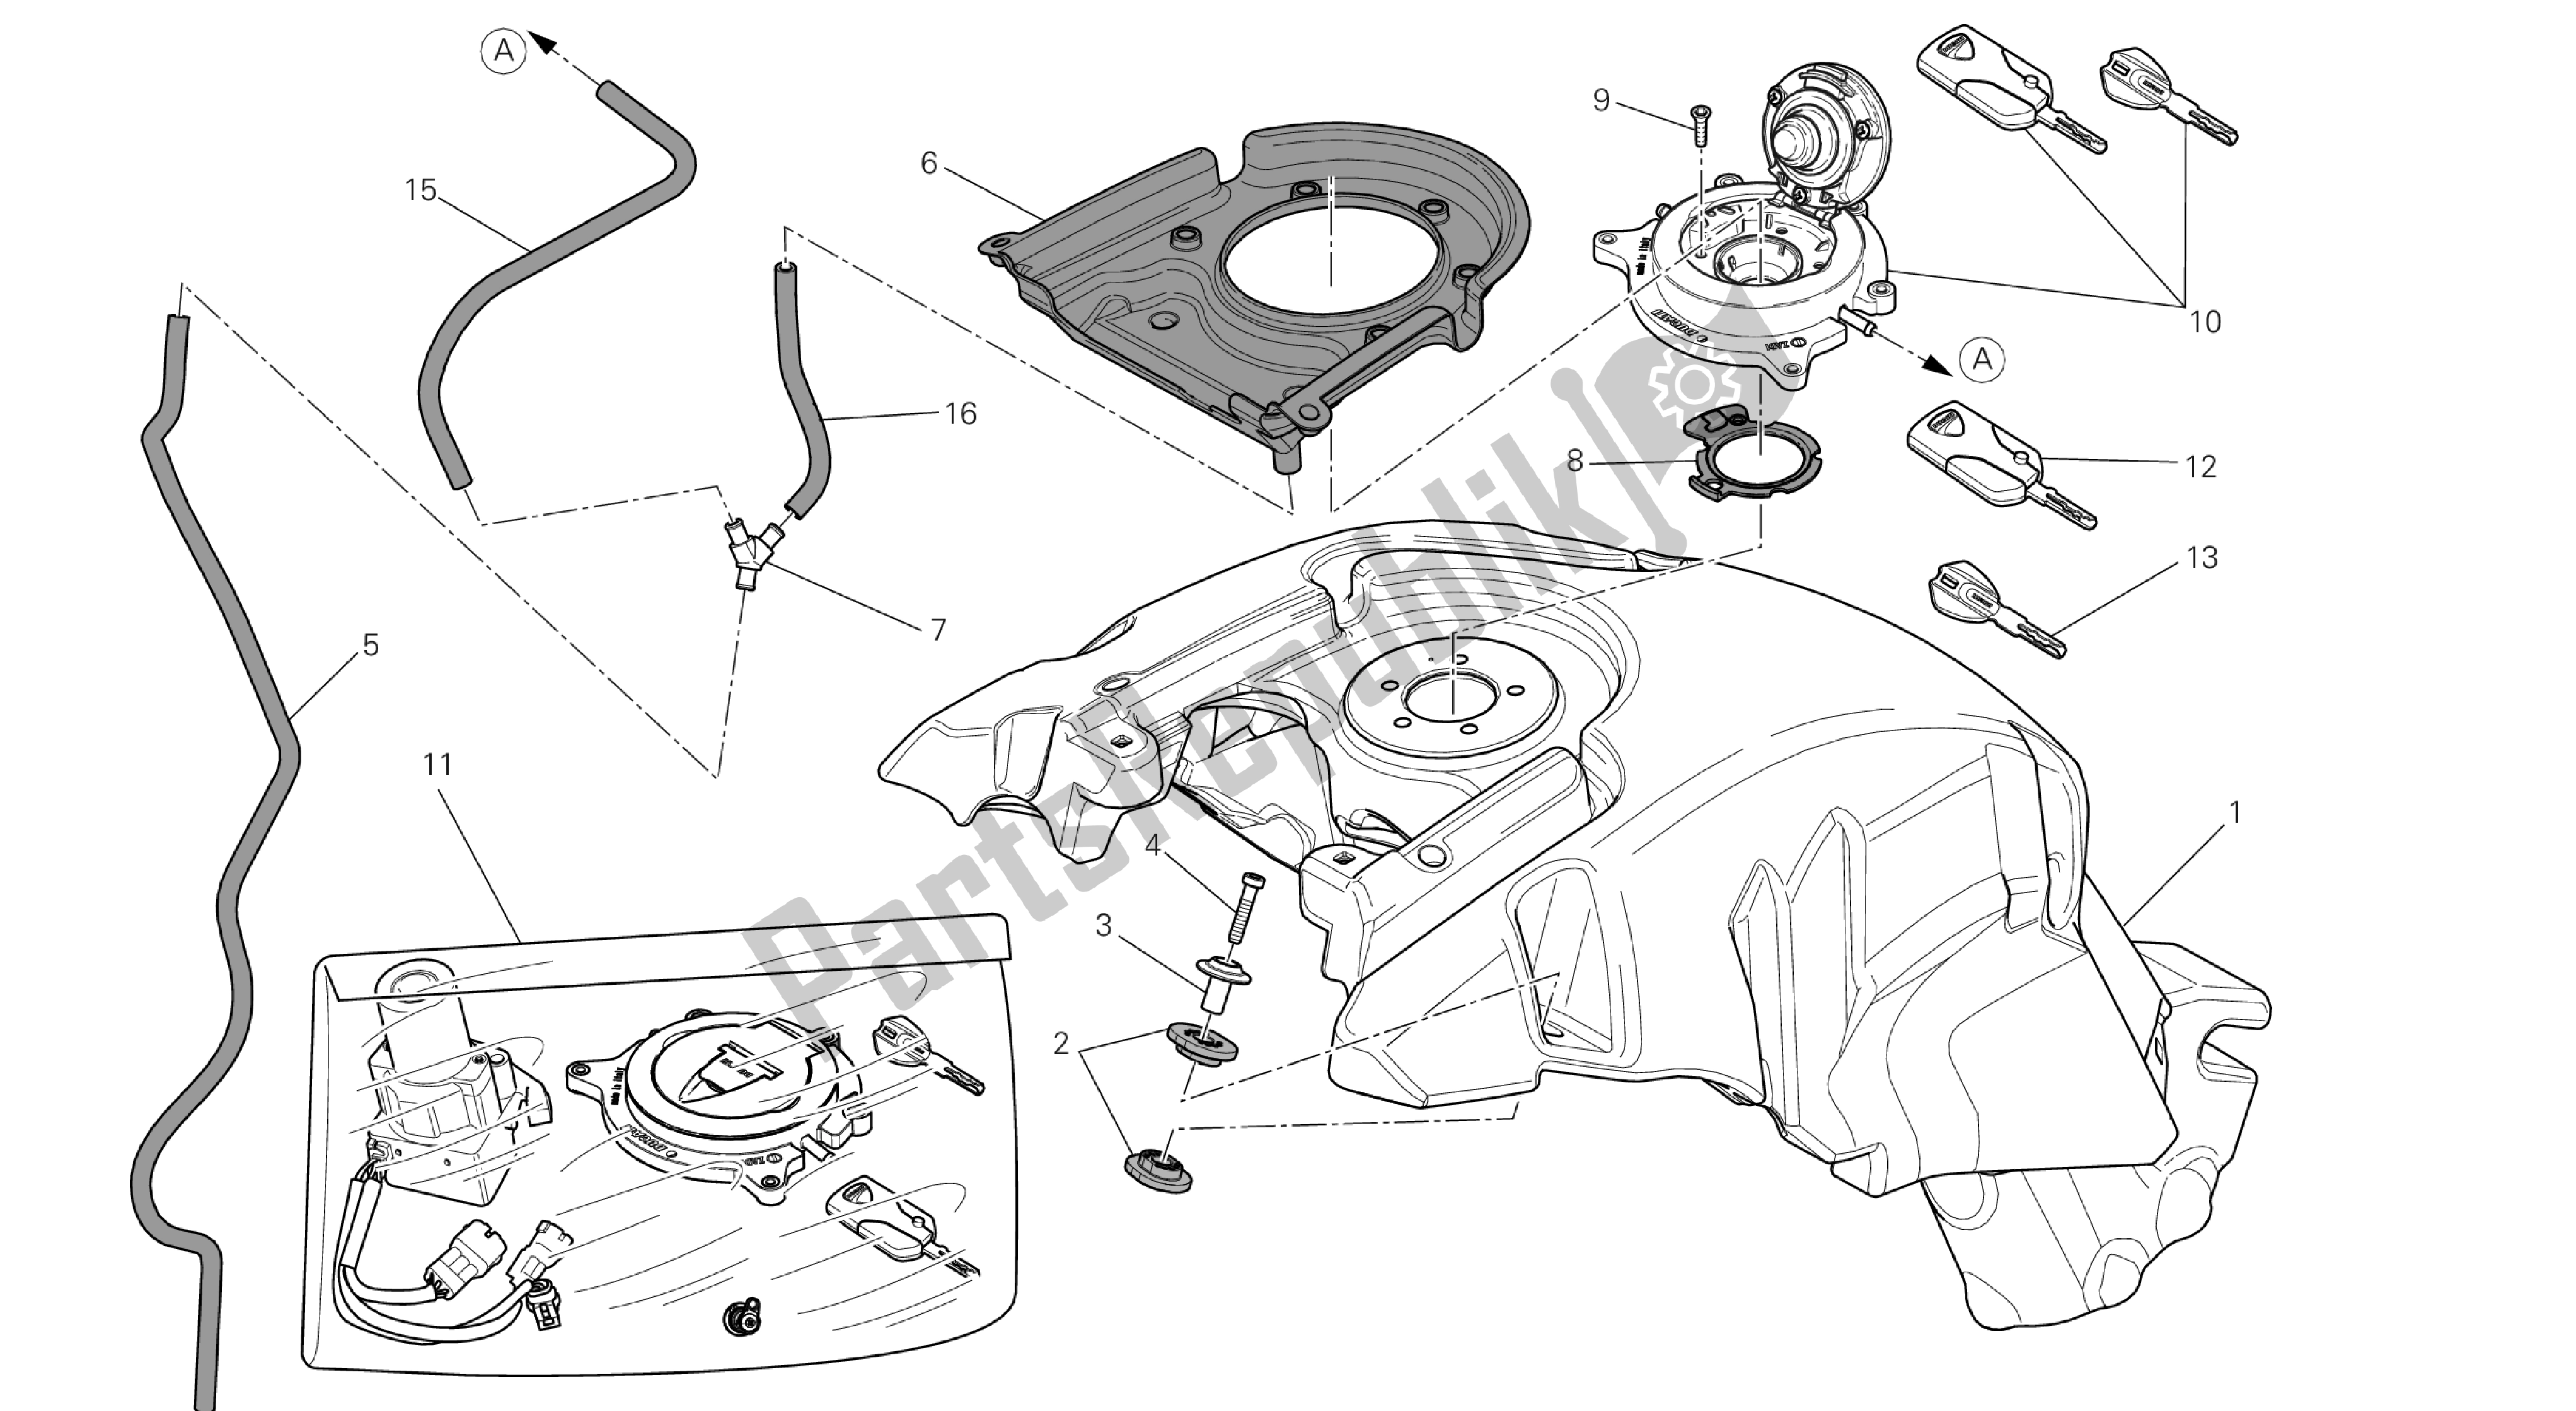 Todas las partes para Dibujo 032 - Tanque De Combustible [mod: D Vl; Xst: C Hn, Thai] Group Fr Ame de Ducati Diavel 1200 2013